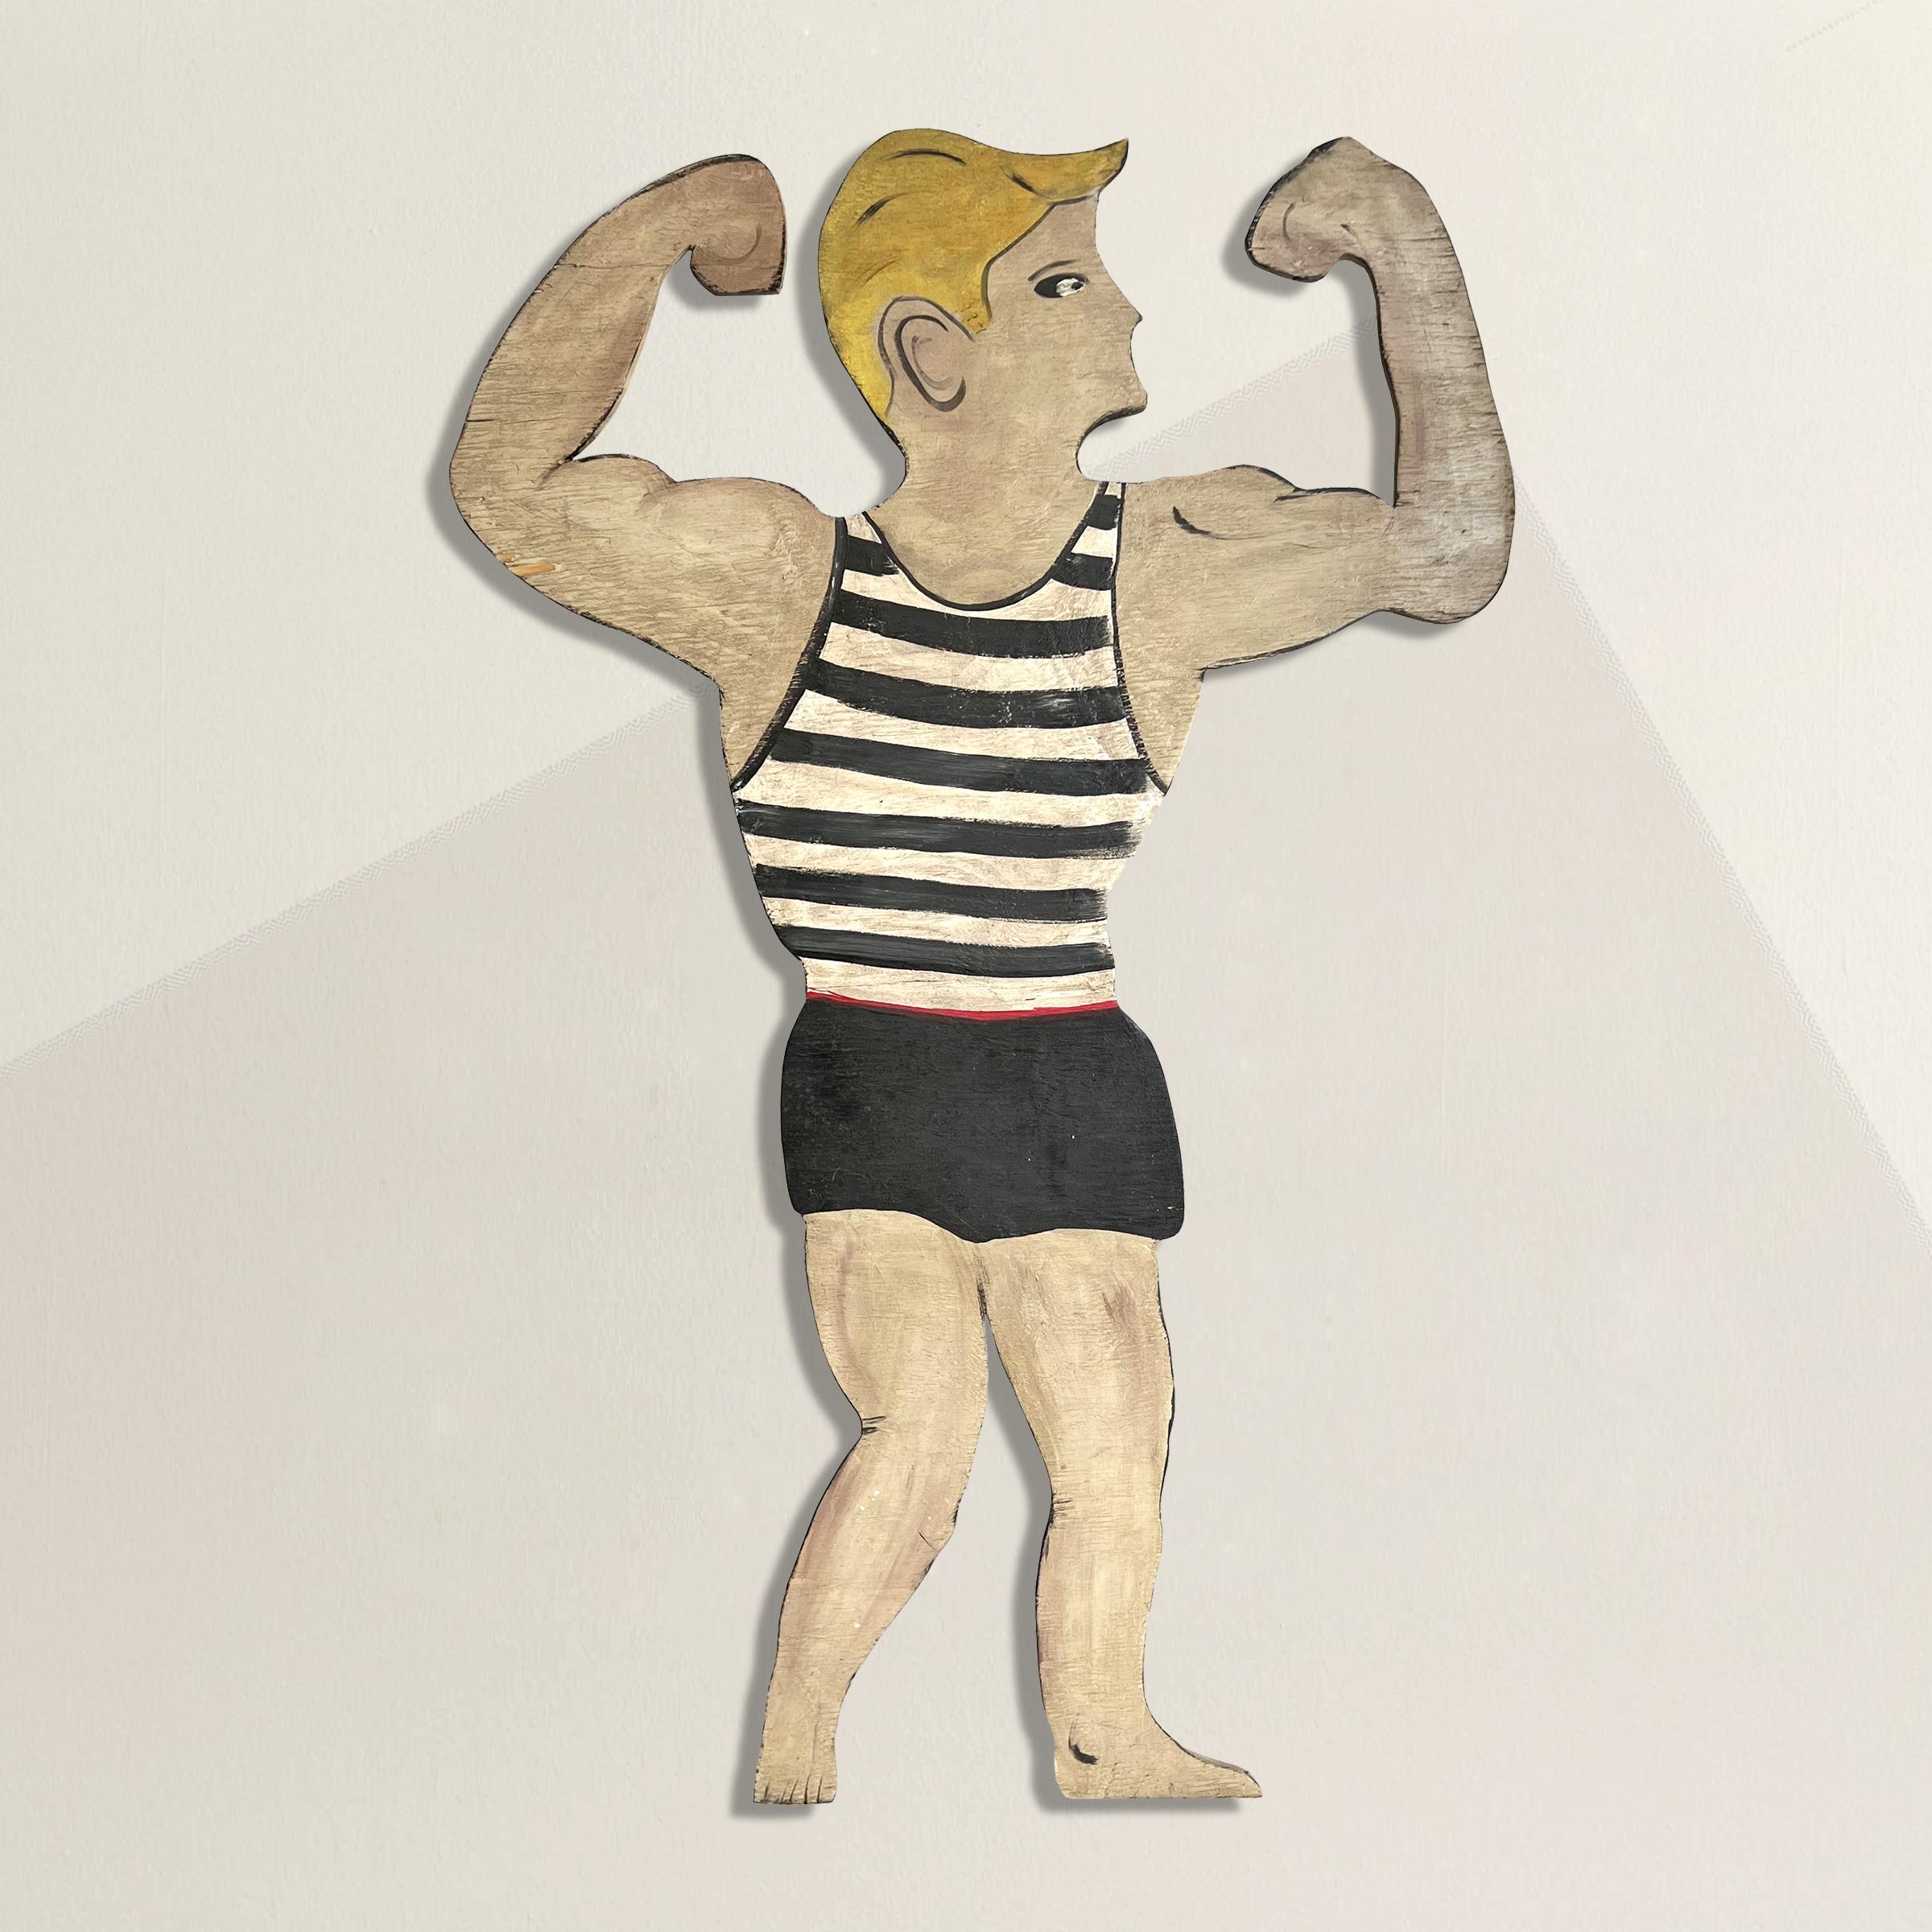 Une découpe en bois d'art populaire américain du milieu du 20e siècle, ludique et insolente, représentant un nageur blond s'agitant dans son maillot de bain rayé noir et blanc, montée sur un support mural en acier personnalisé afin qu'il puisse être